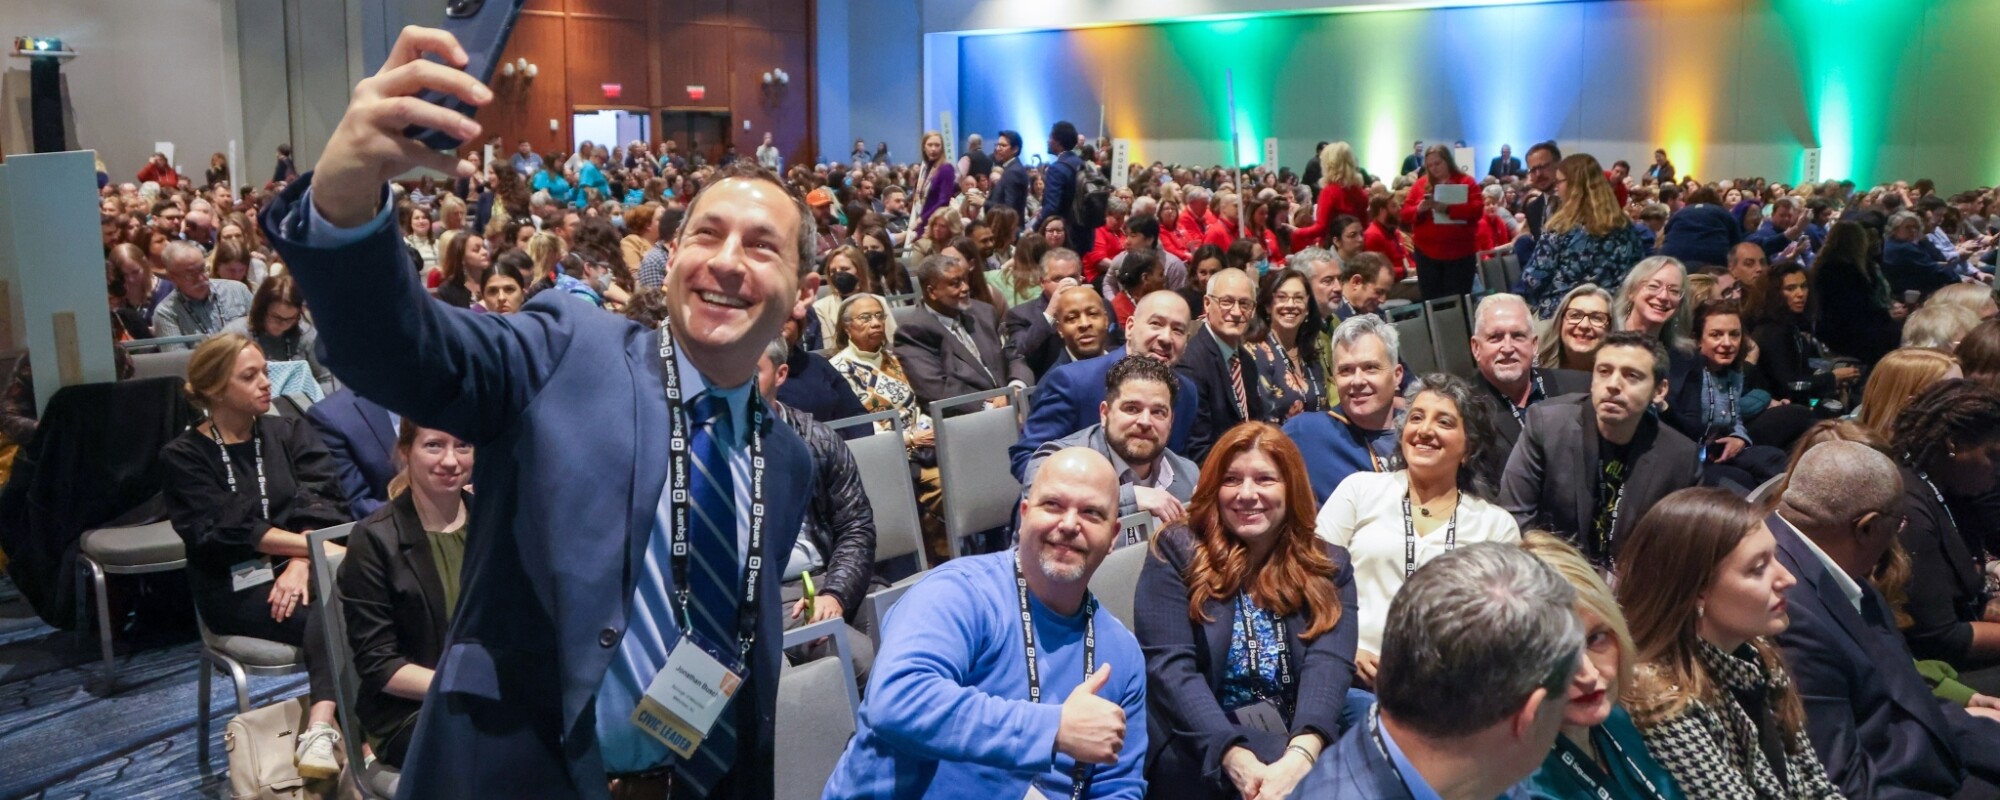 En una gran sala de conferencias, la gente busca asiento mientras un hombre se hace un selfie con sus colegas.